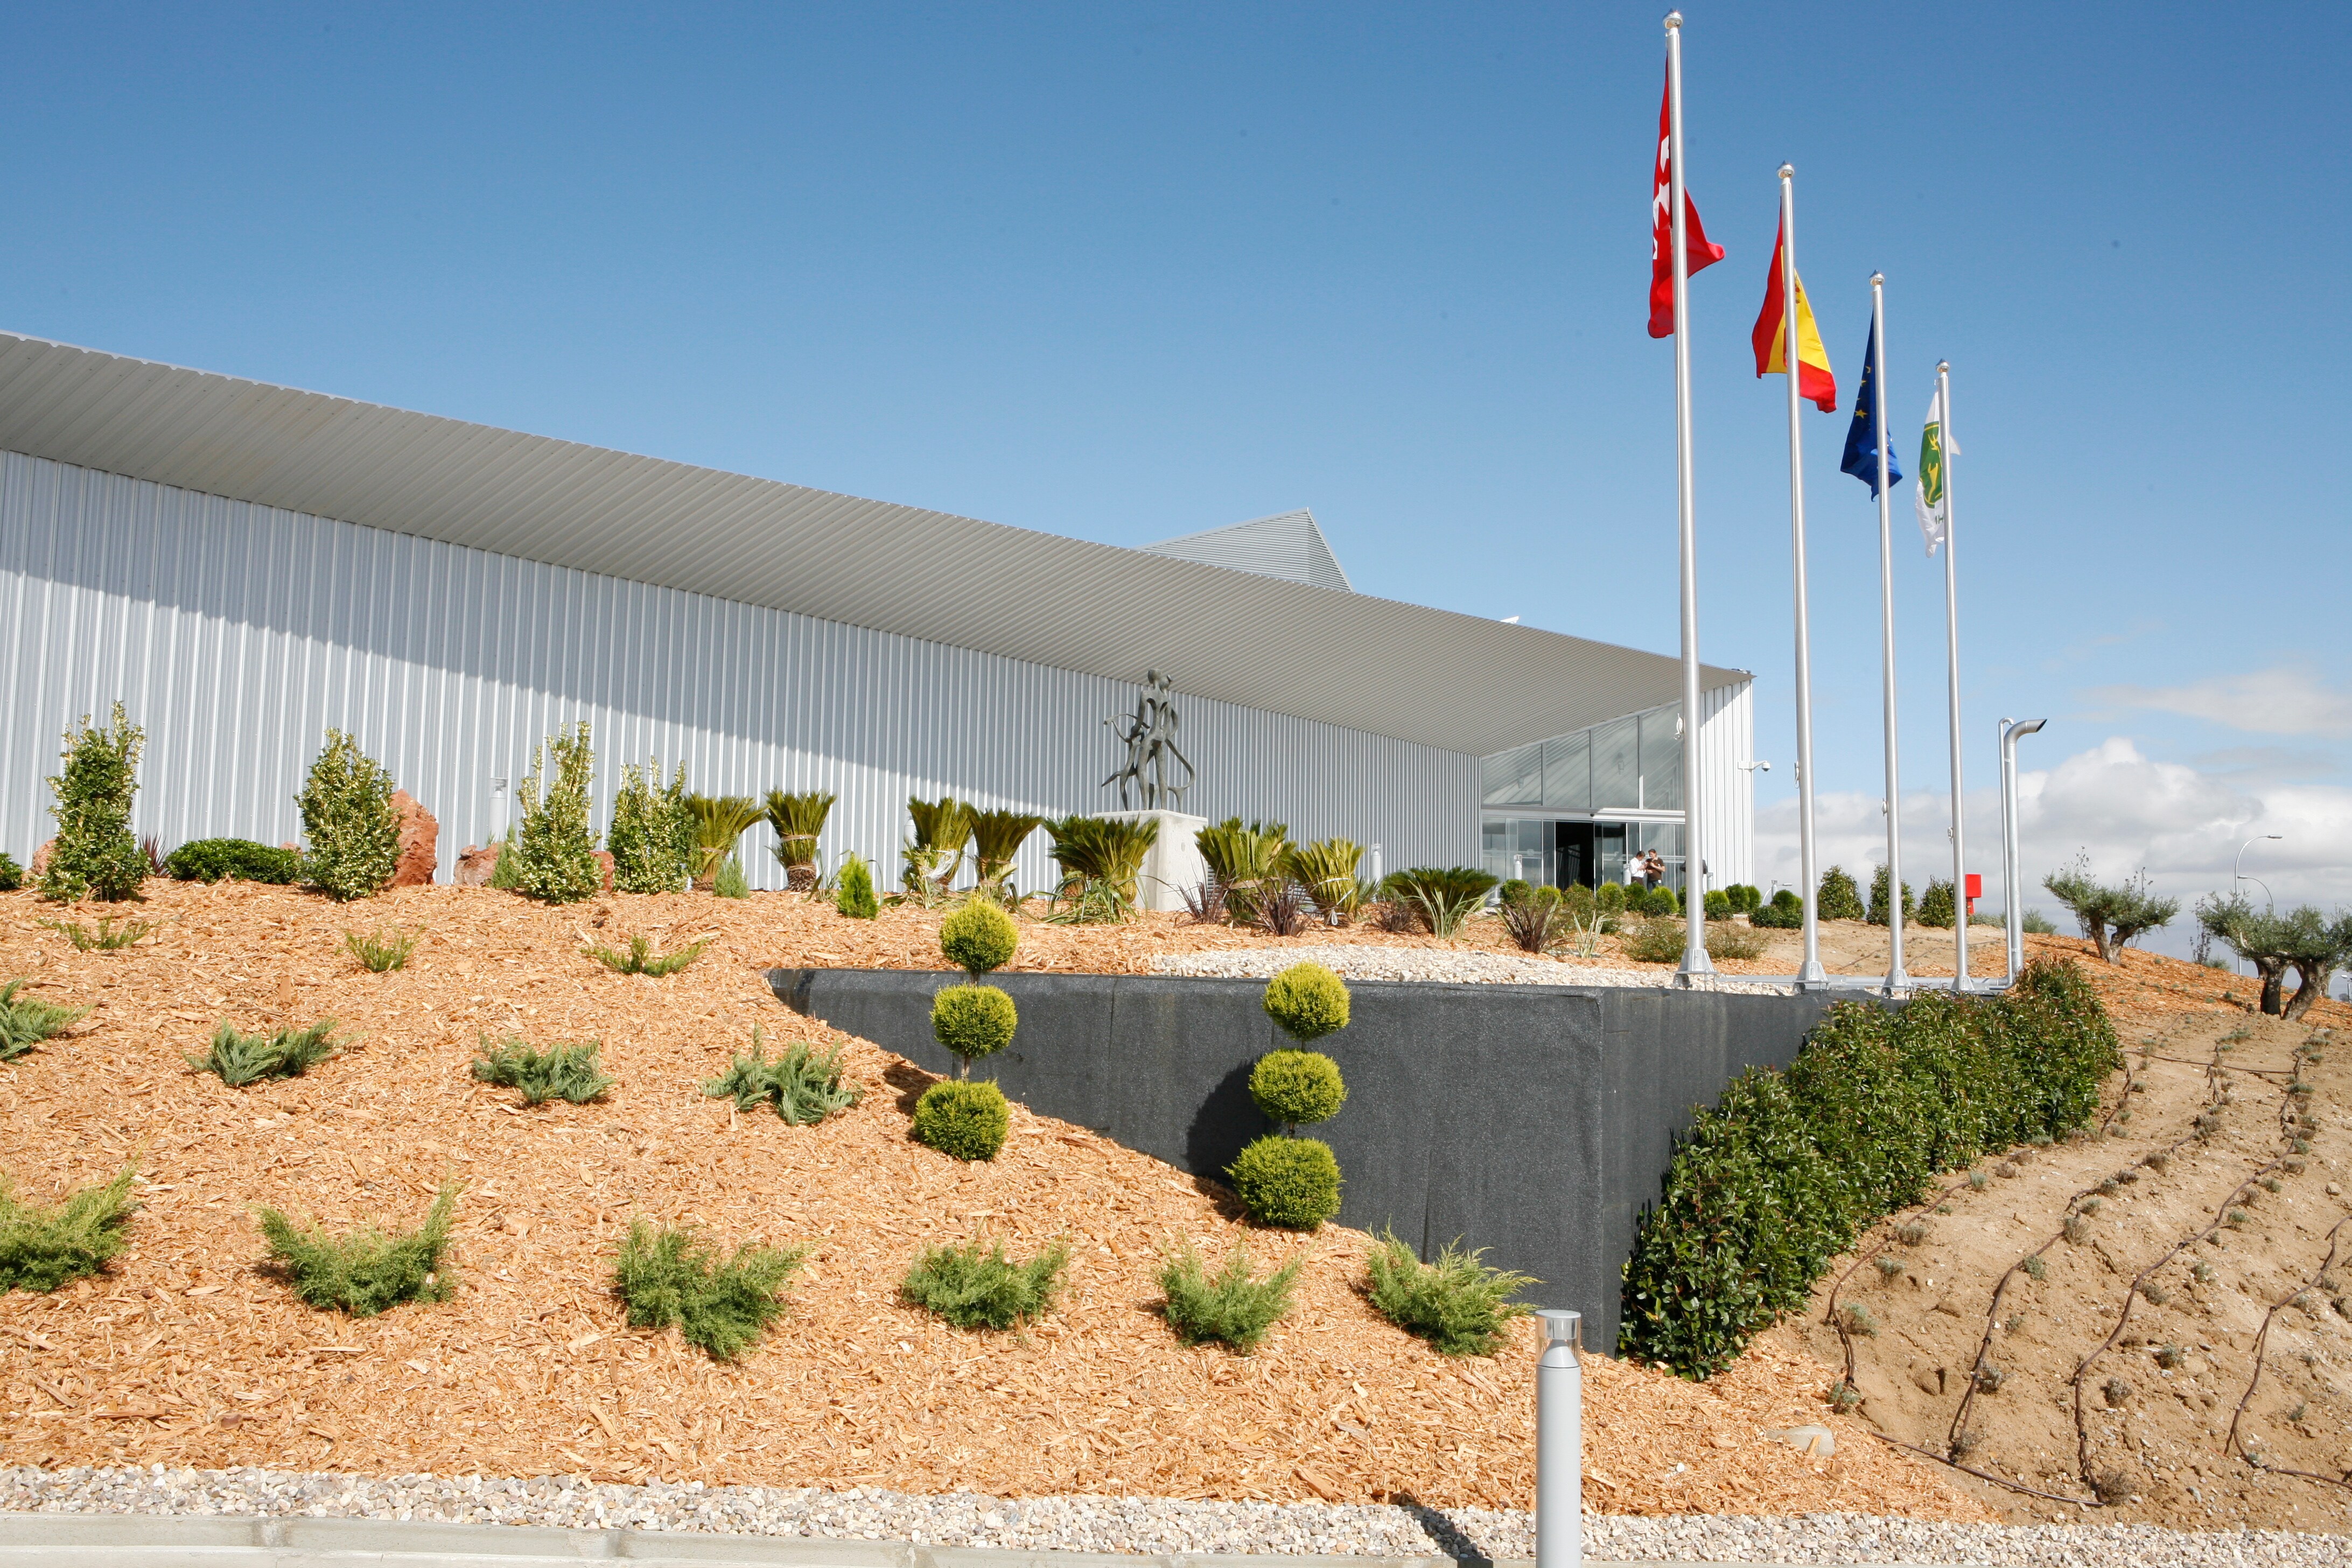 John Deere abrirá un hub de innovación de referencia mundial en su sede corporativa en España 